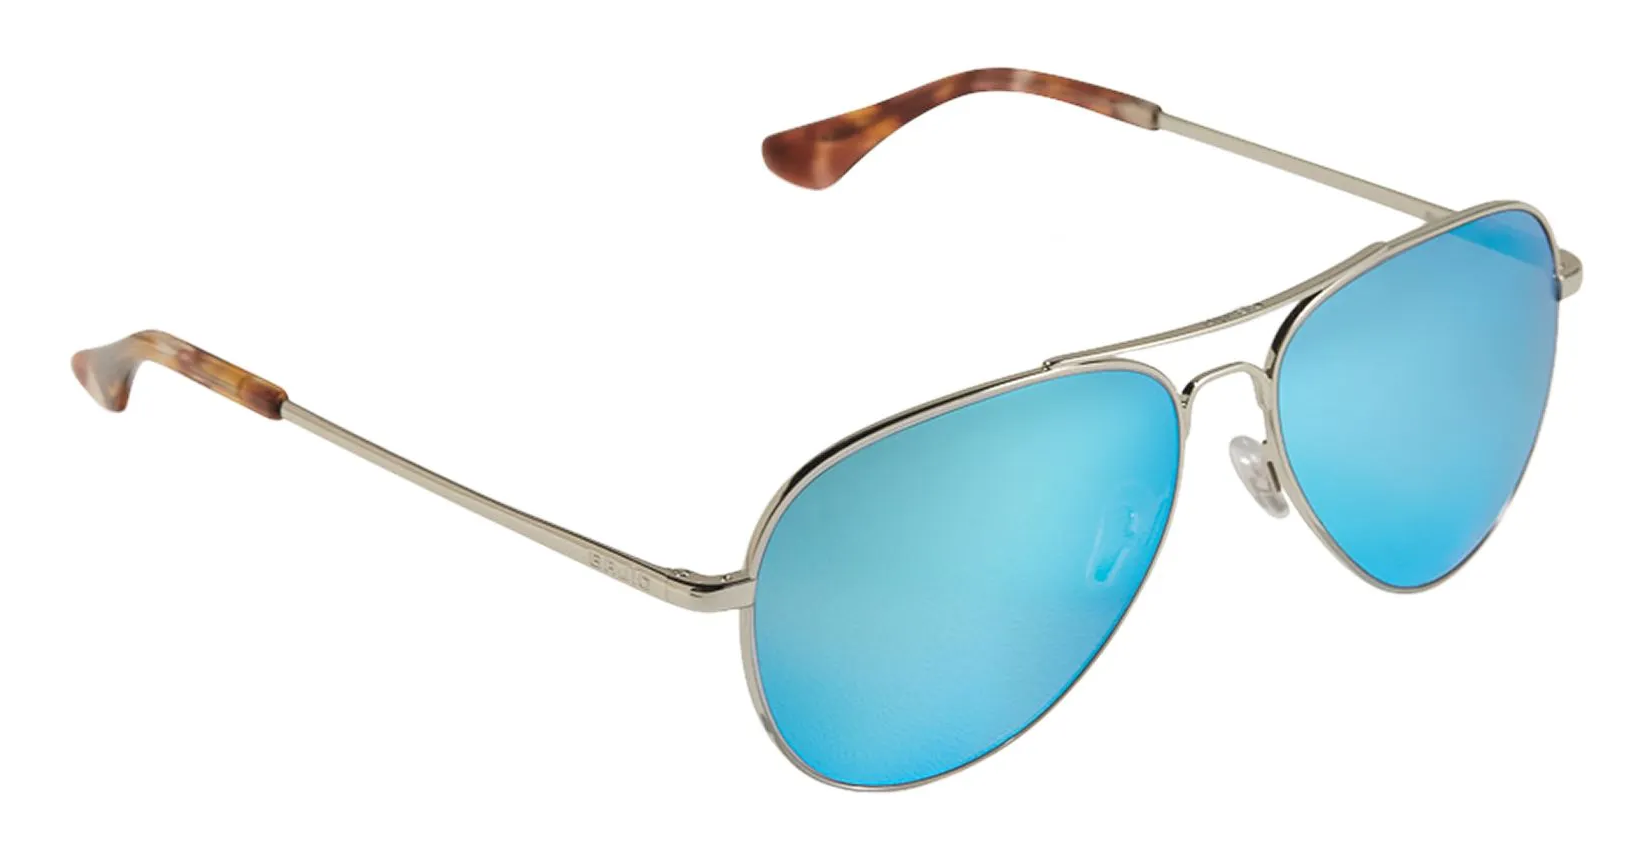 Bajío Soldado sunglasses in silver with aviator blue mirror lenses.